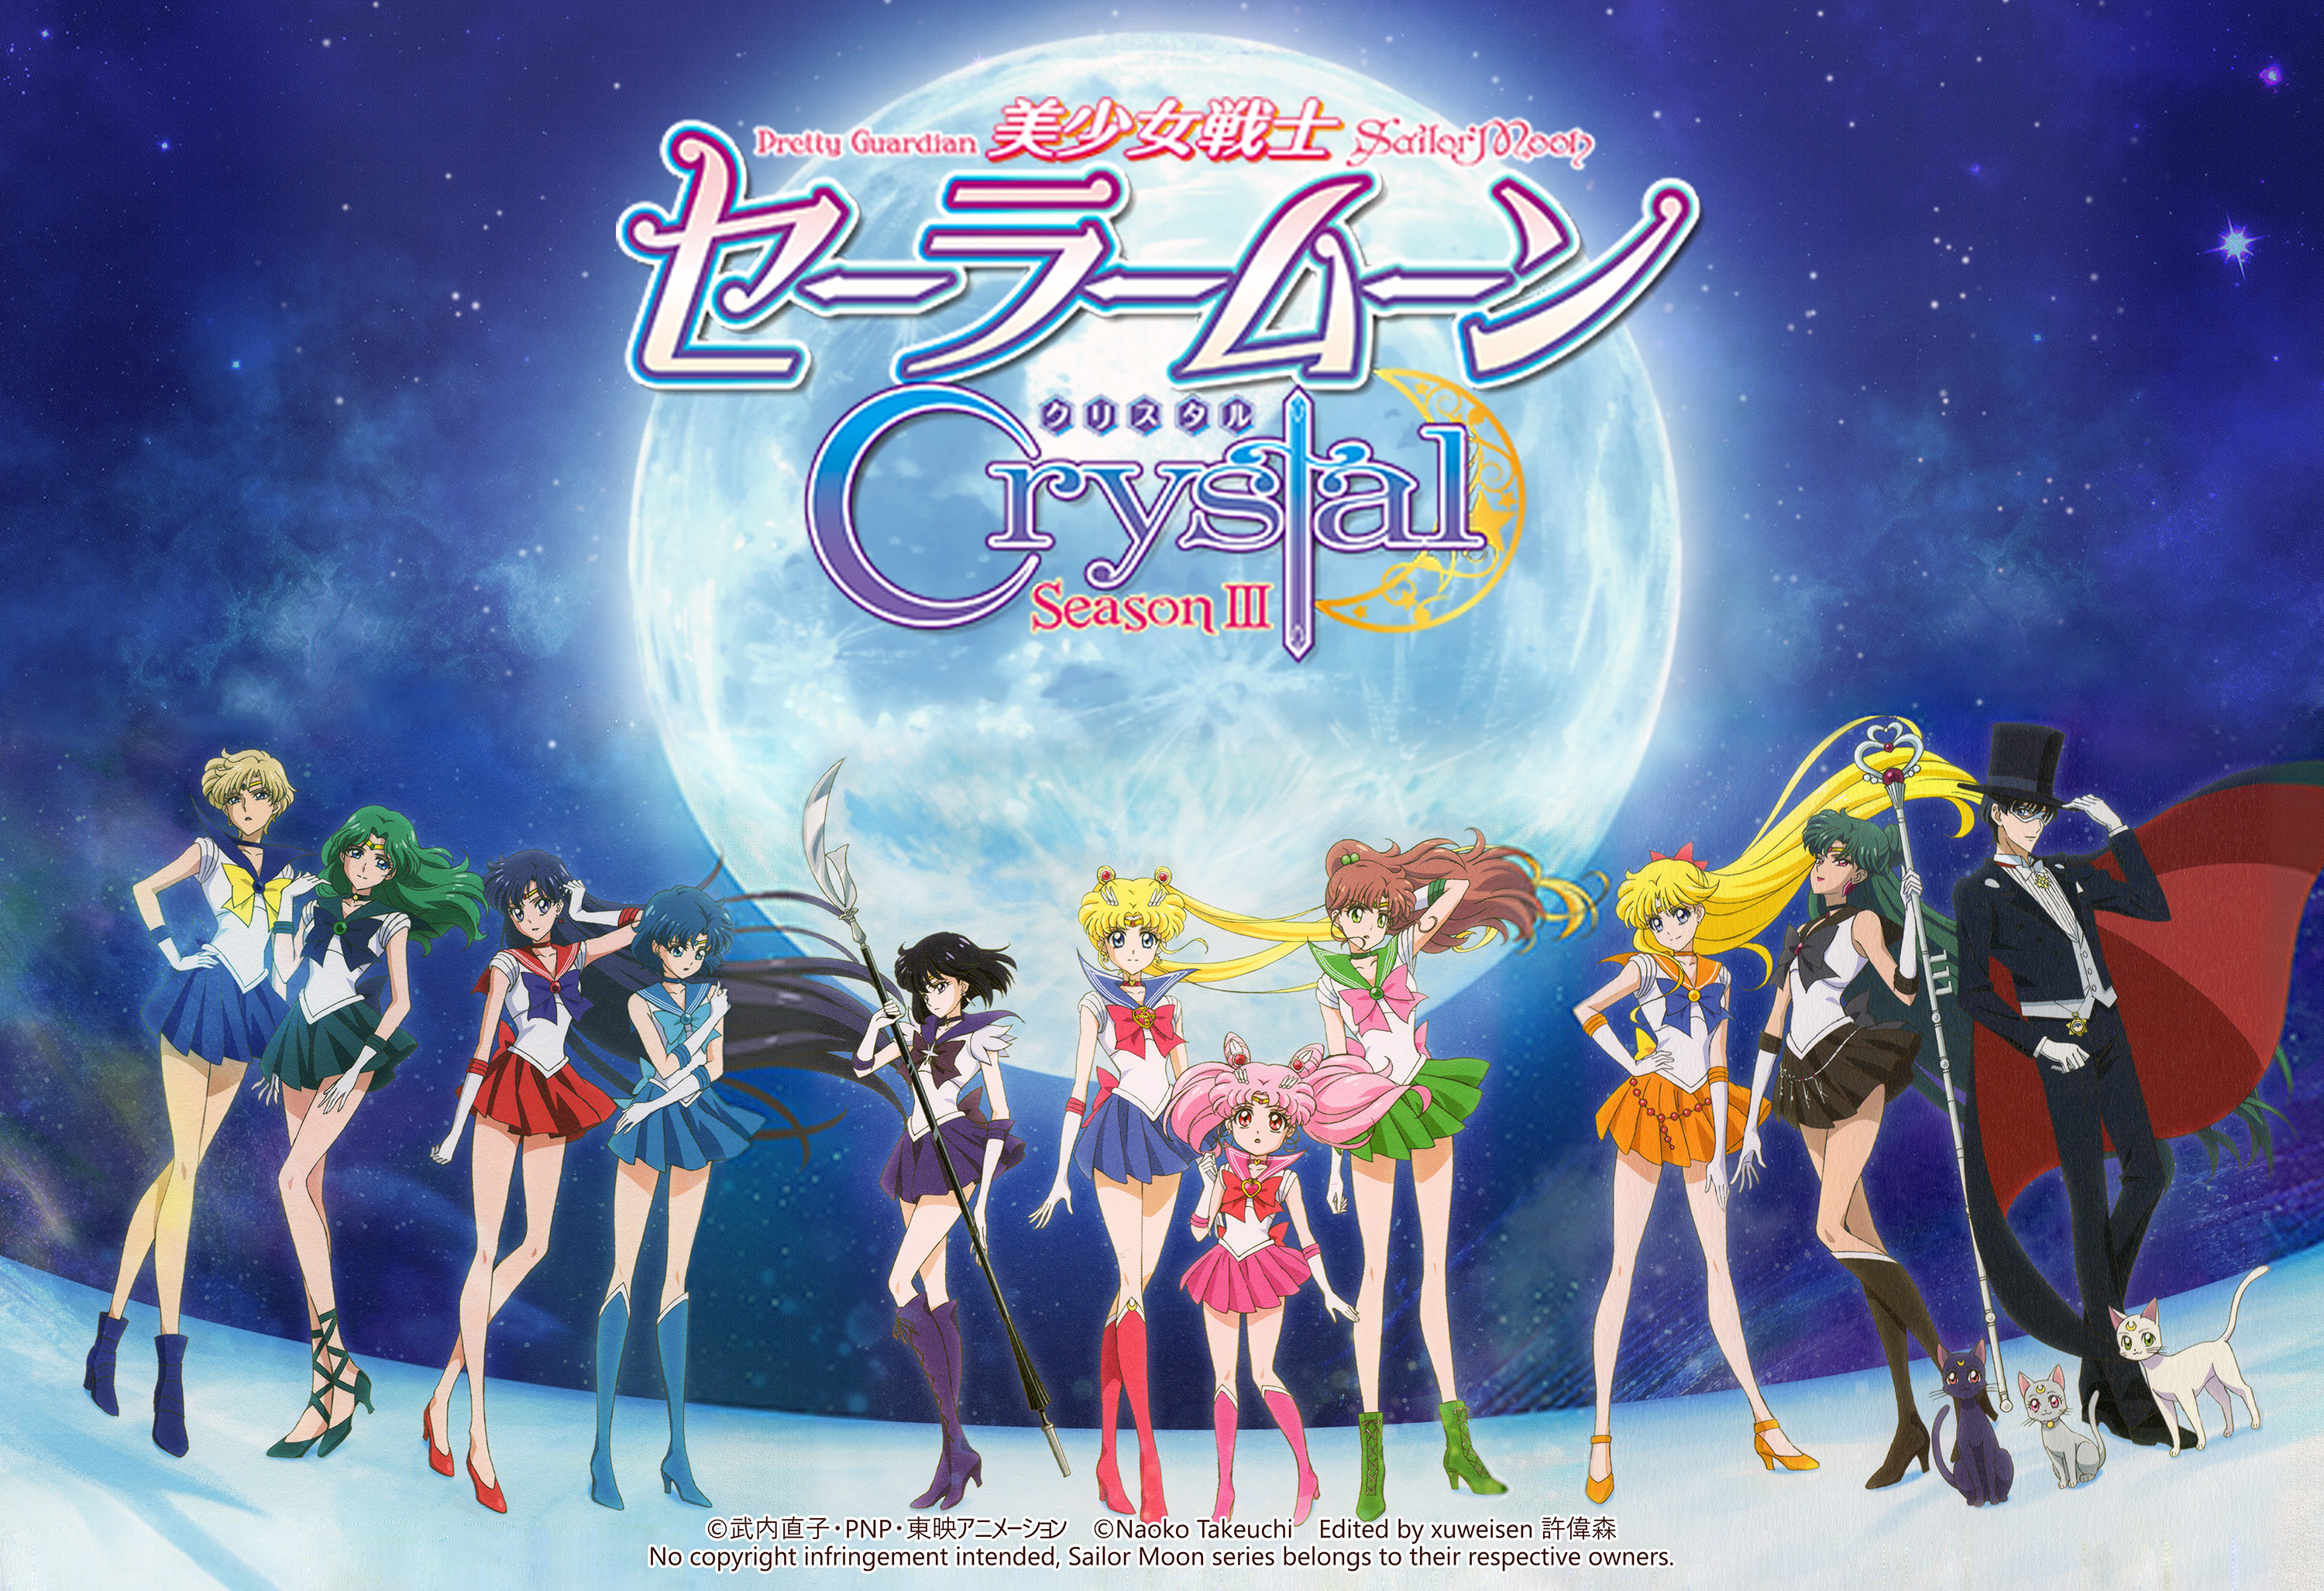 Sailor Moon Wallpapers - Top 35 Best Sailor Moon Backgrounds Download